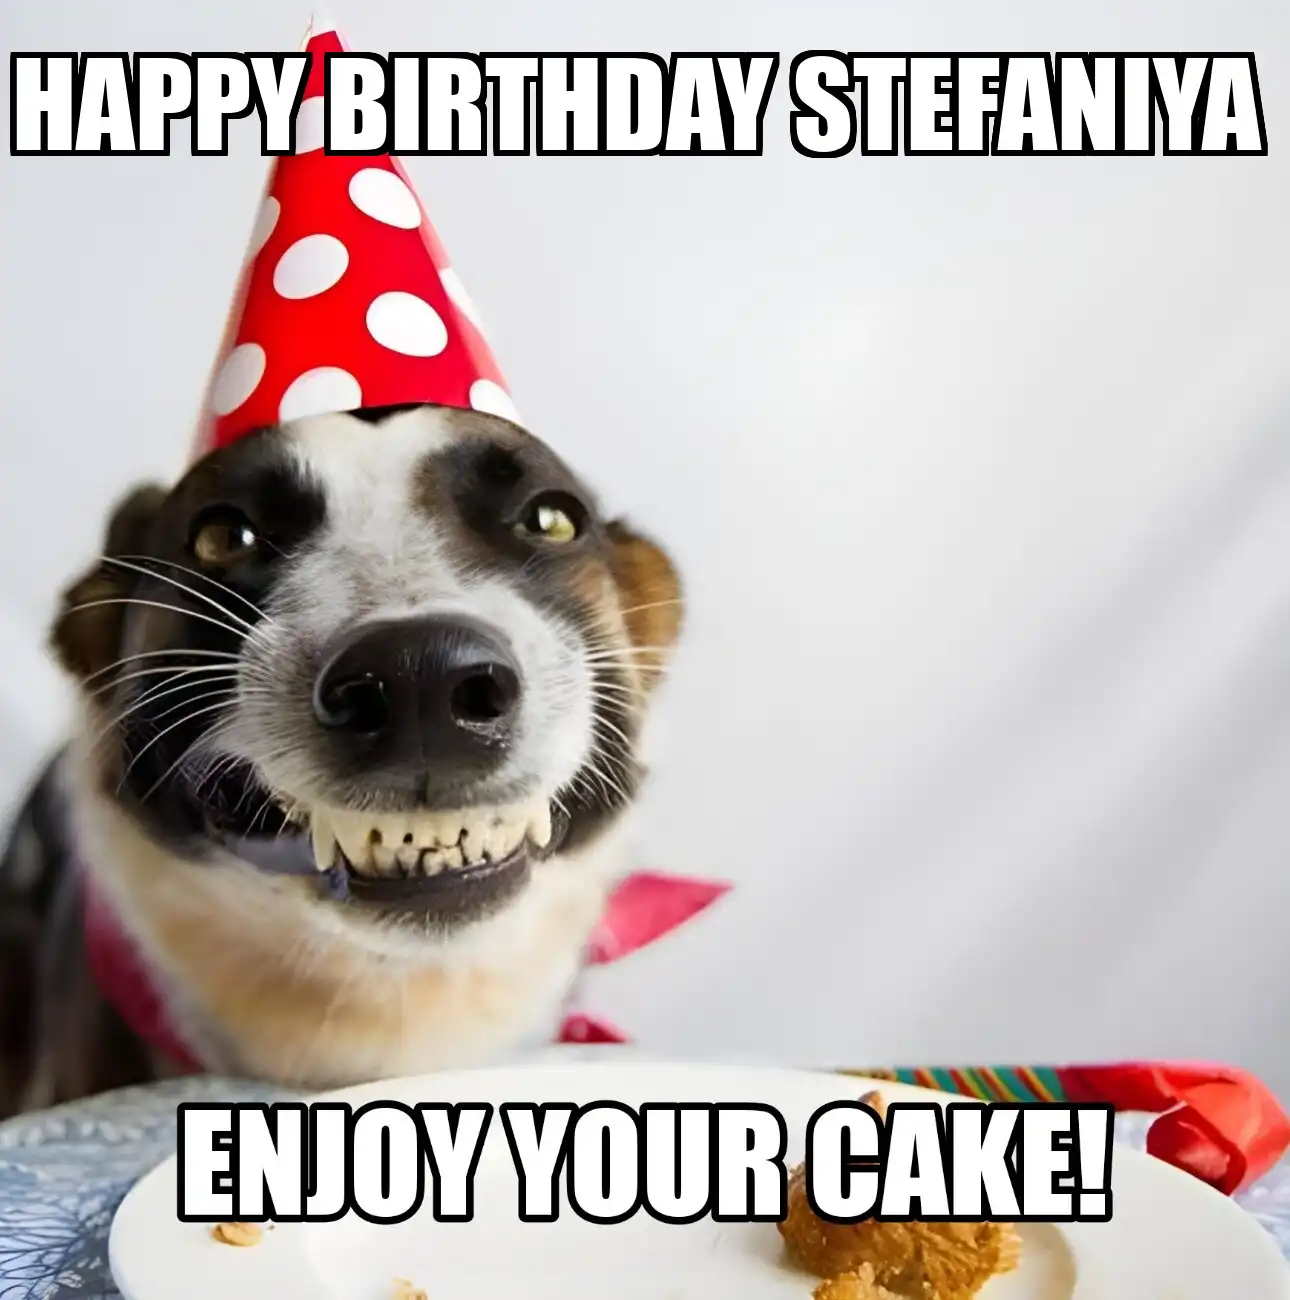 Happy Birthday Stefaniya Enjoy Your Cake Dog Meme